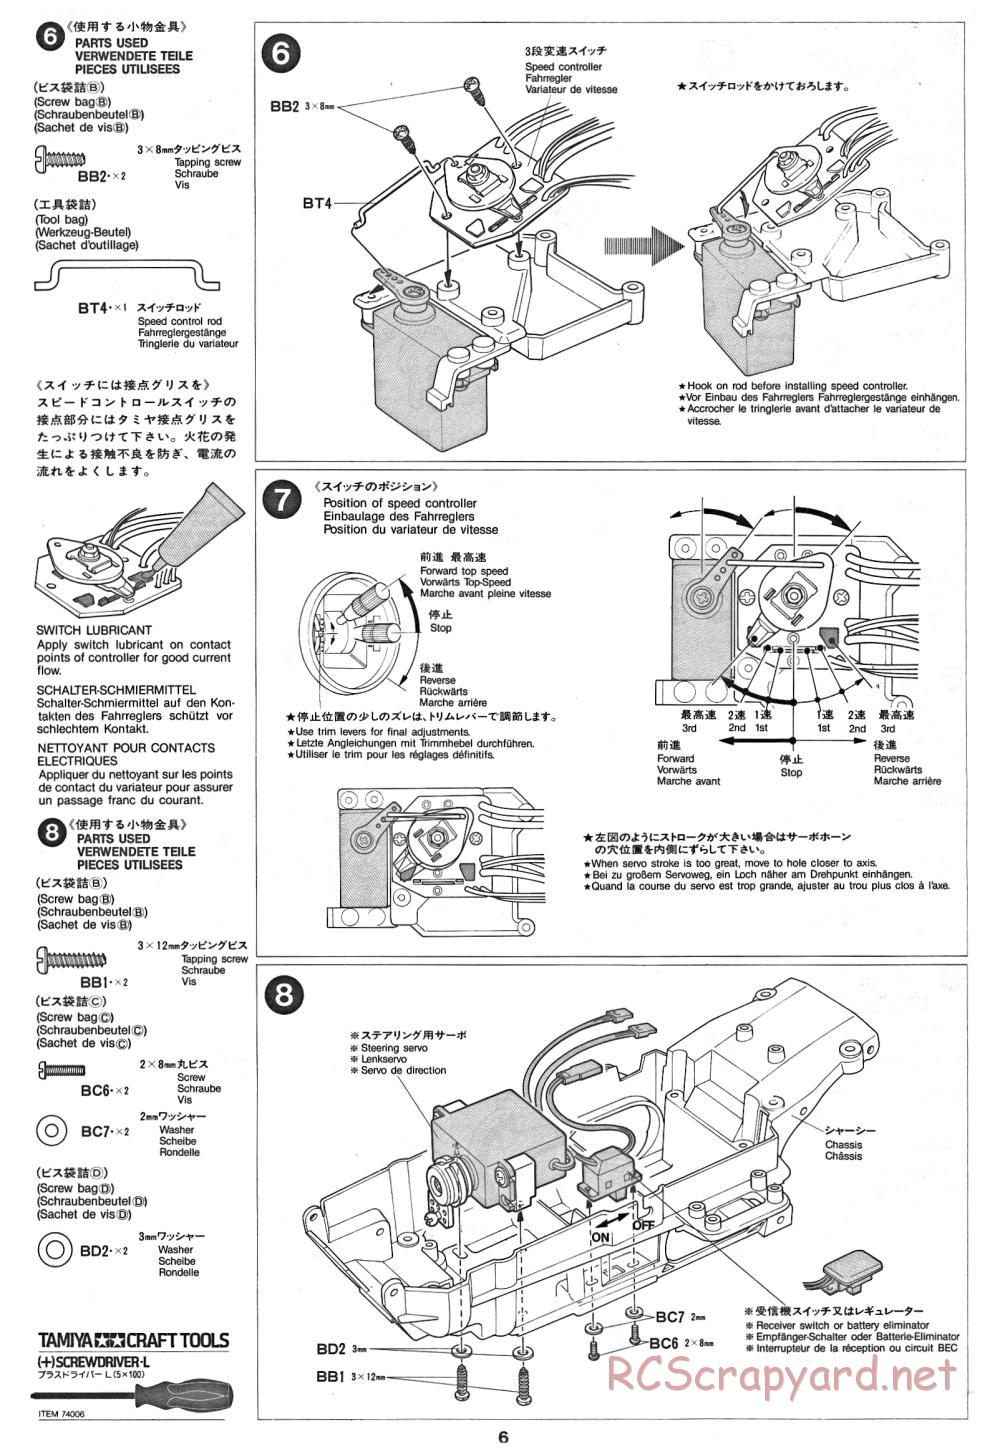 Tamiya - Thunder Dragon - 58073 - Manual - Page 6